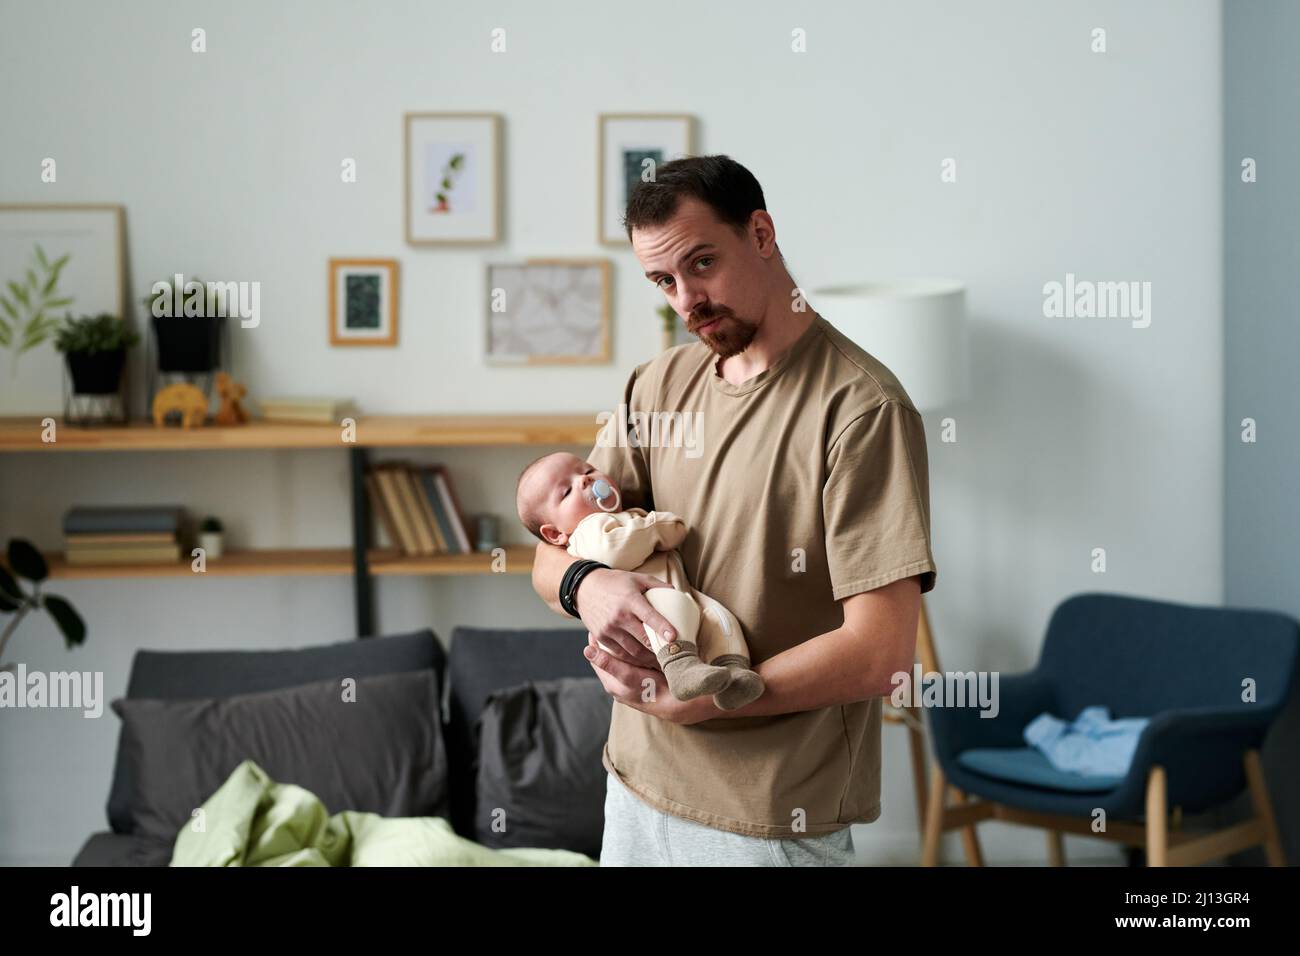 Moderner junger Mann, der seinen kleinen Sohn einlullt, während er vor der Kamera gegen Regale, Bilder in Rahmen, Sessel und Bett steht Stockfoto